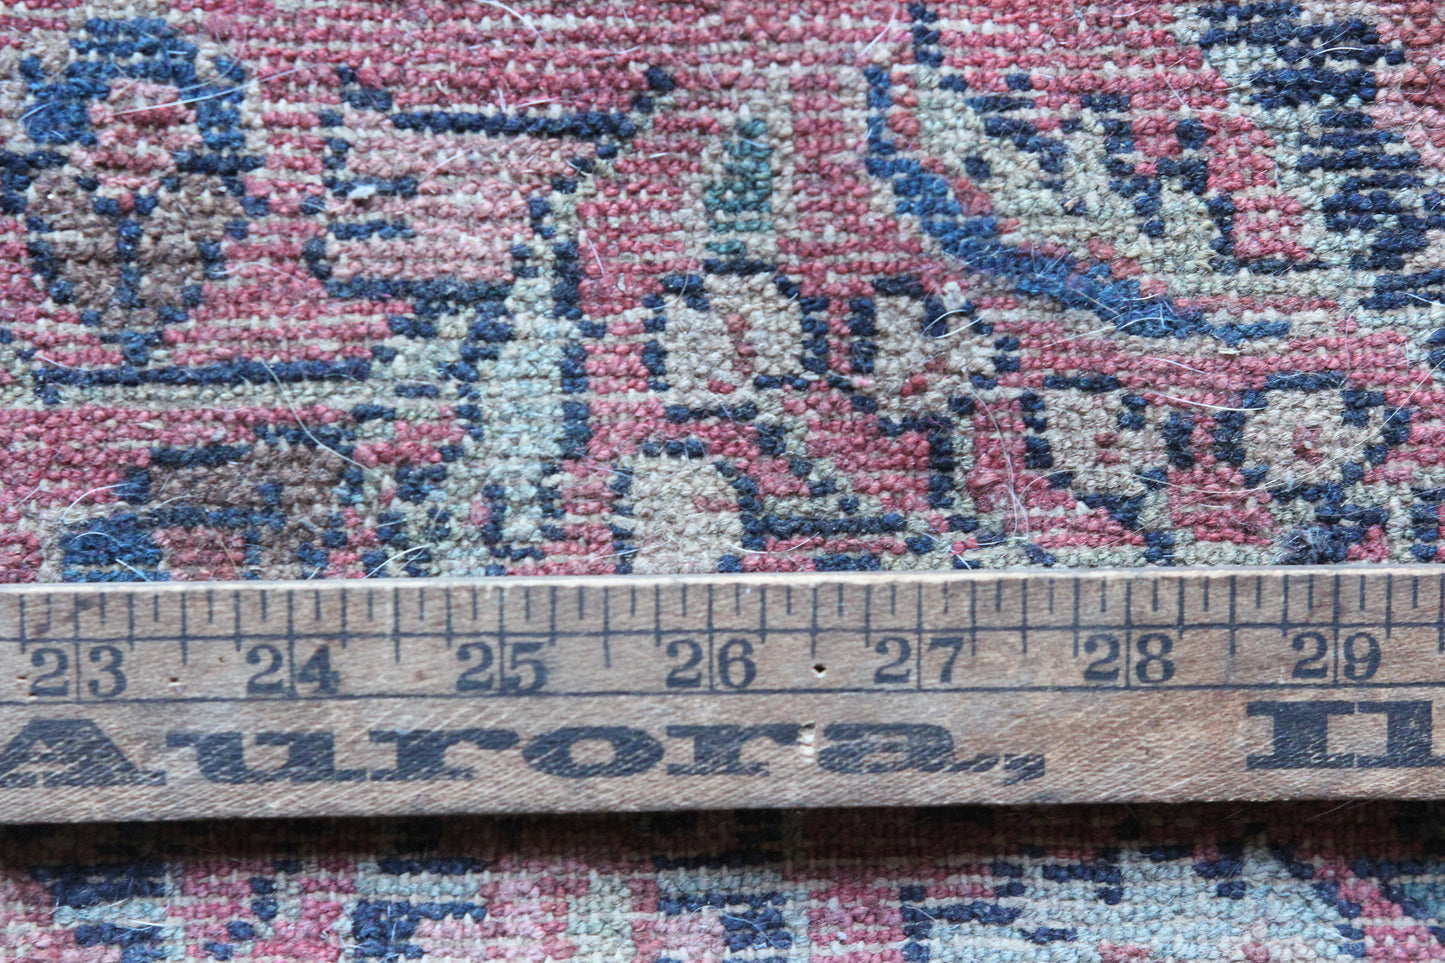 32" x 48" Vintage Handmade Rug